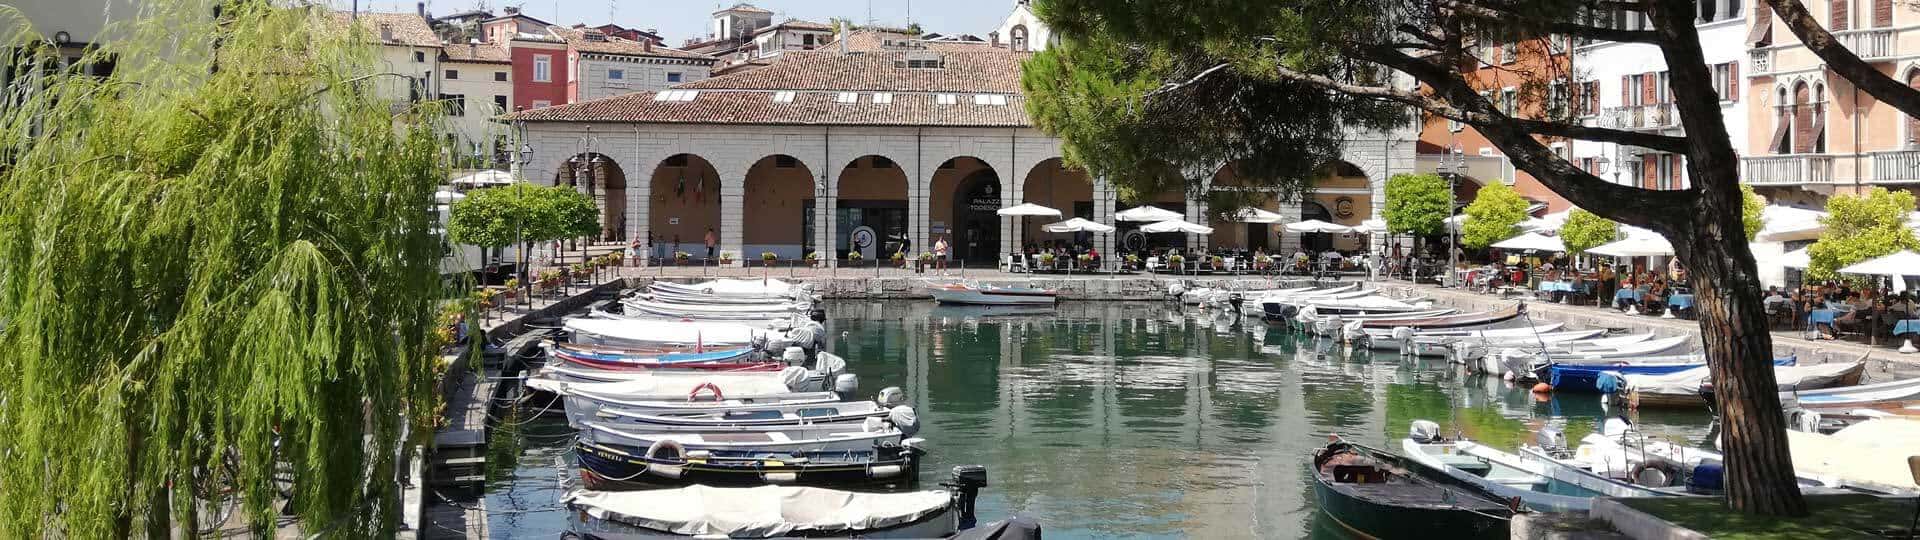 Desenzano Blick auf den alten Hafen